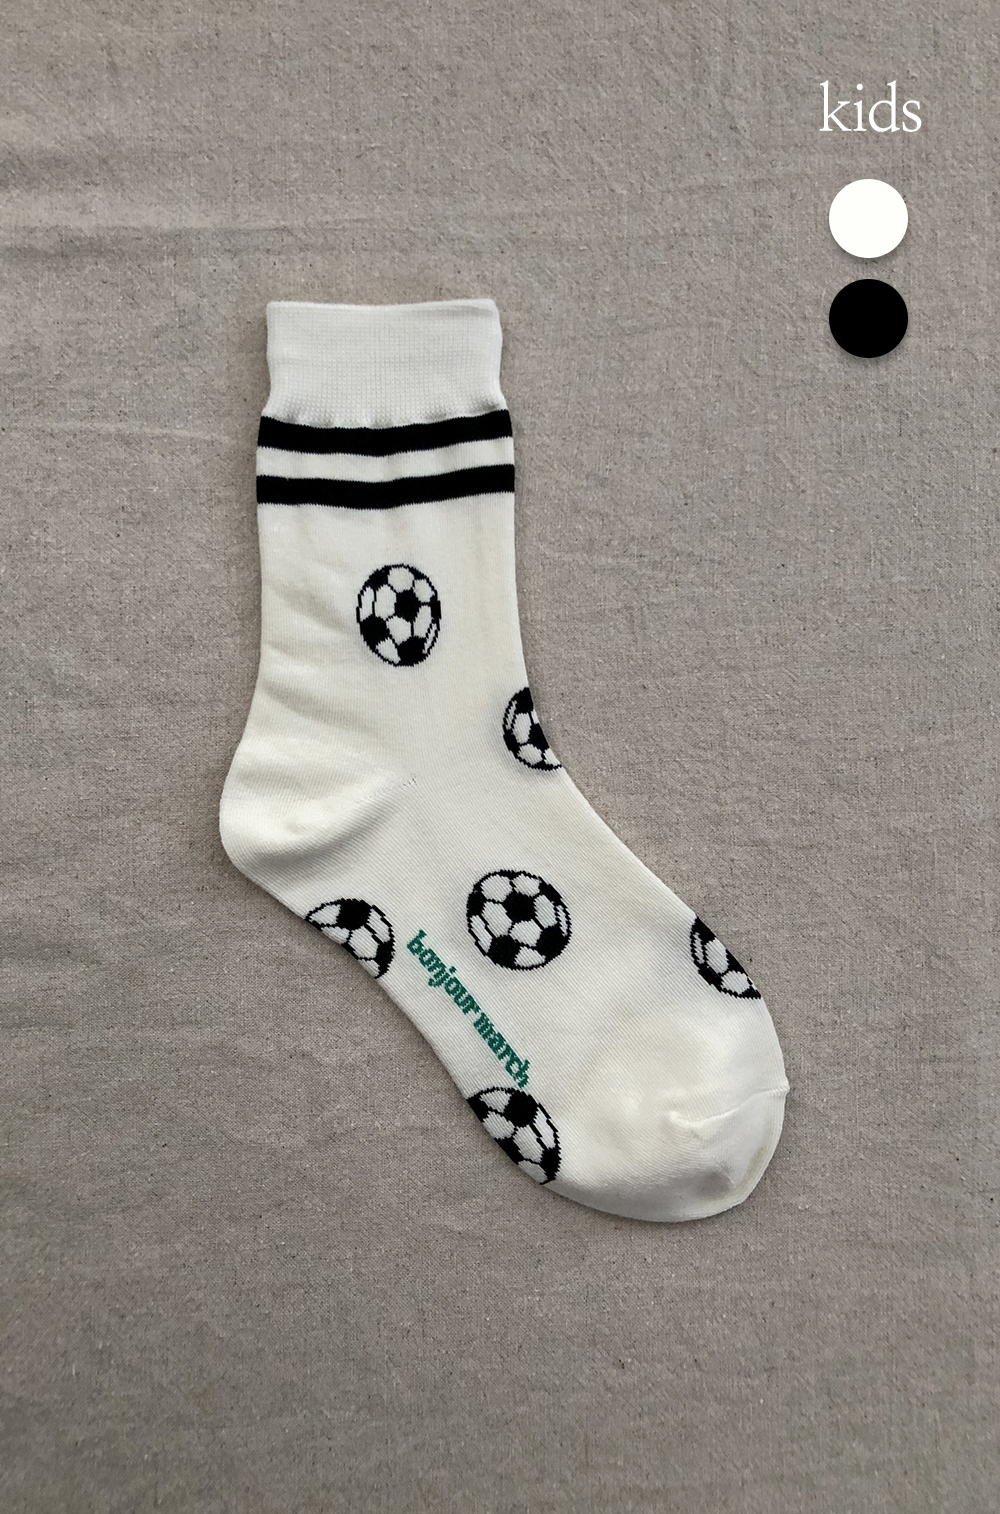 Football socks_kids